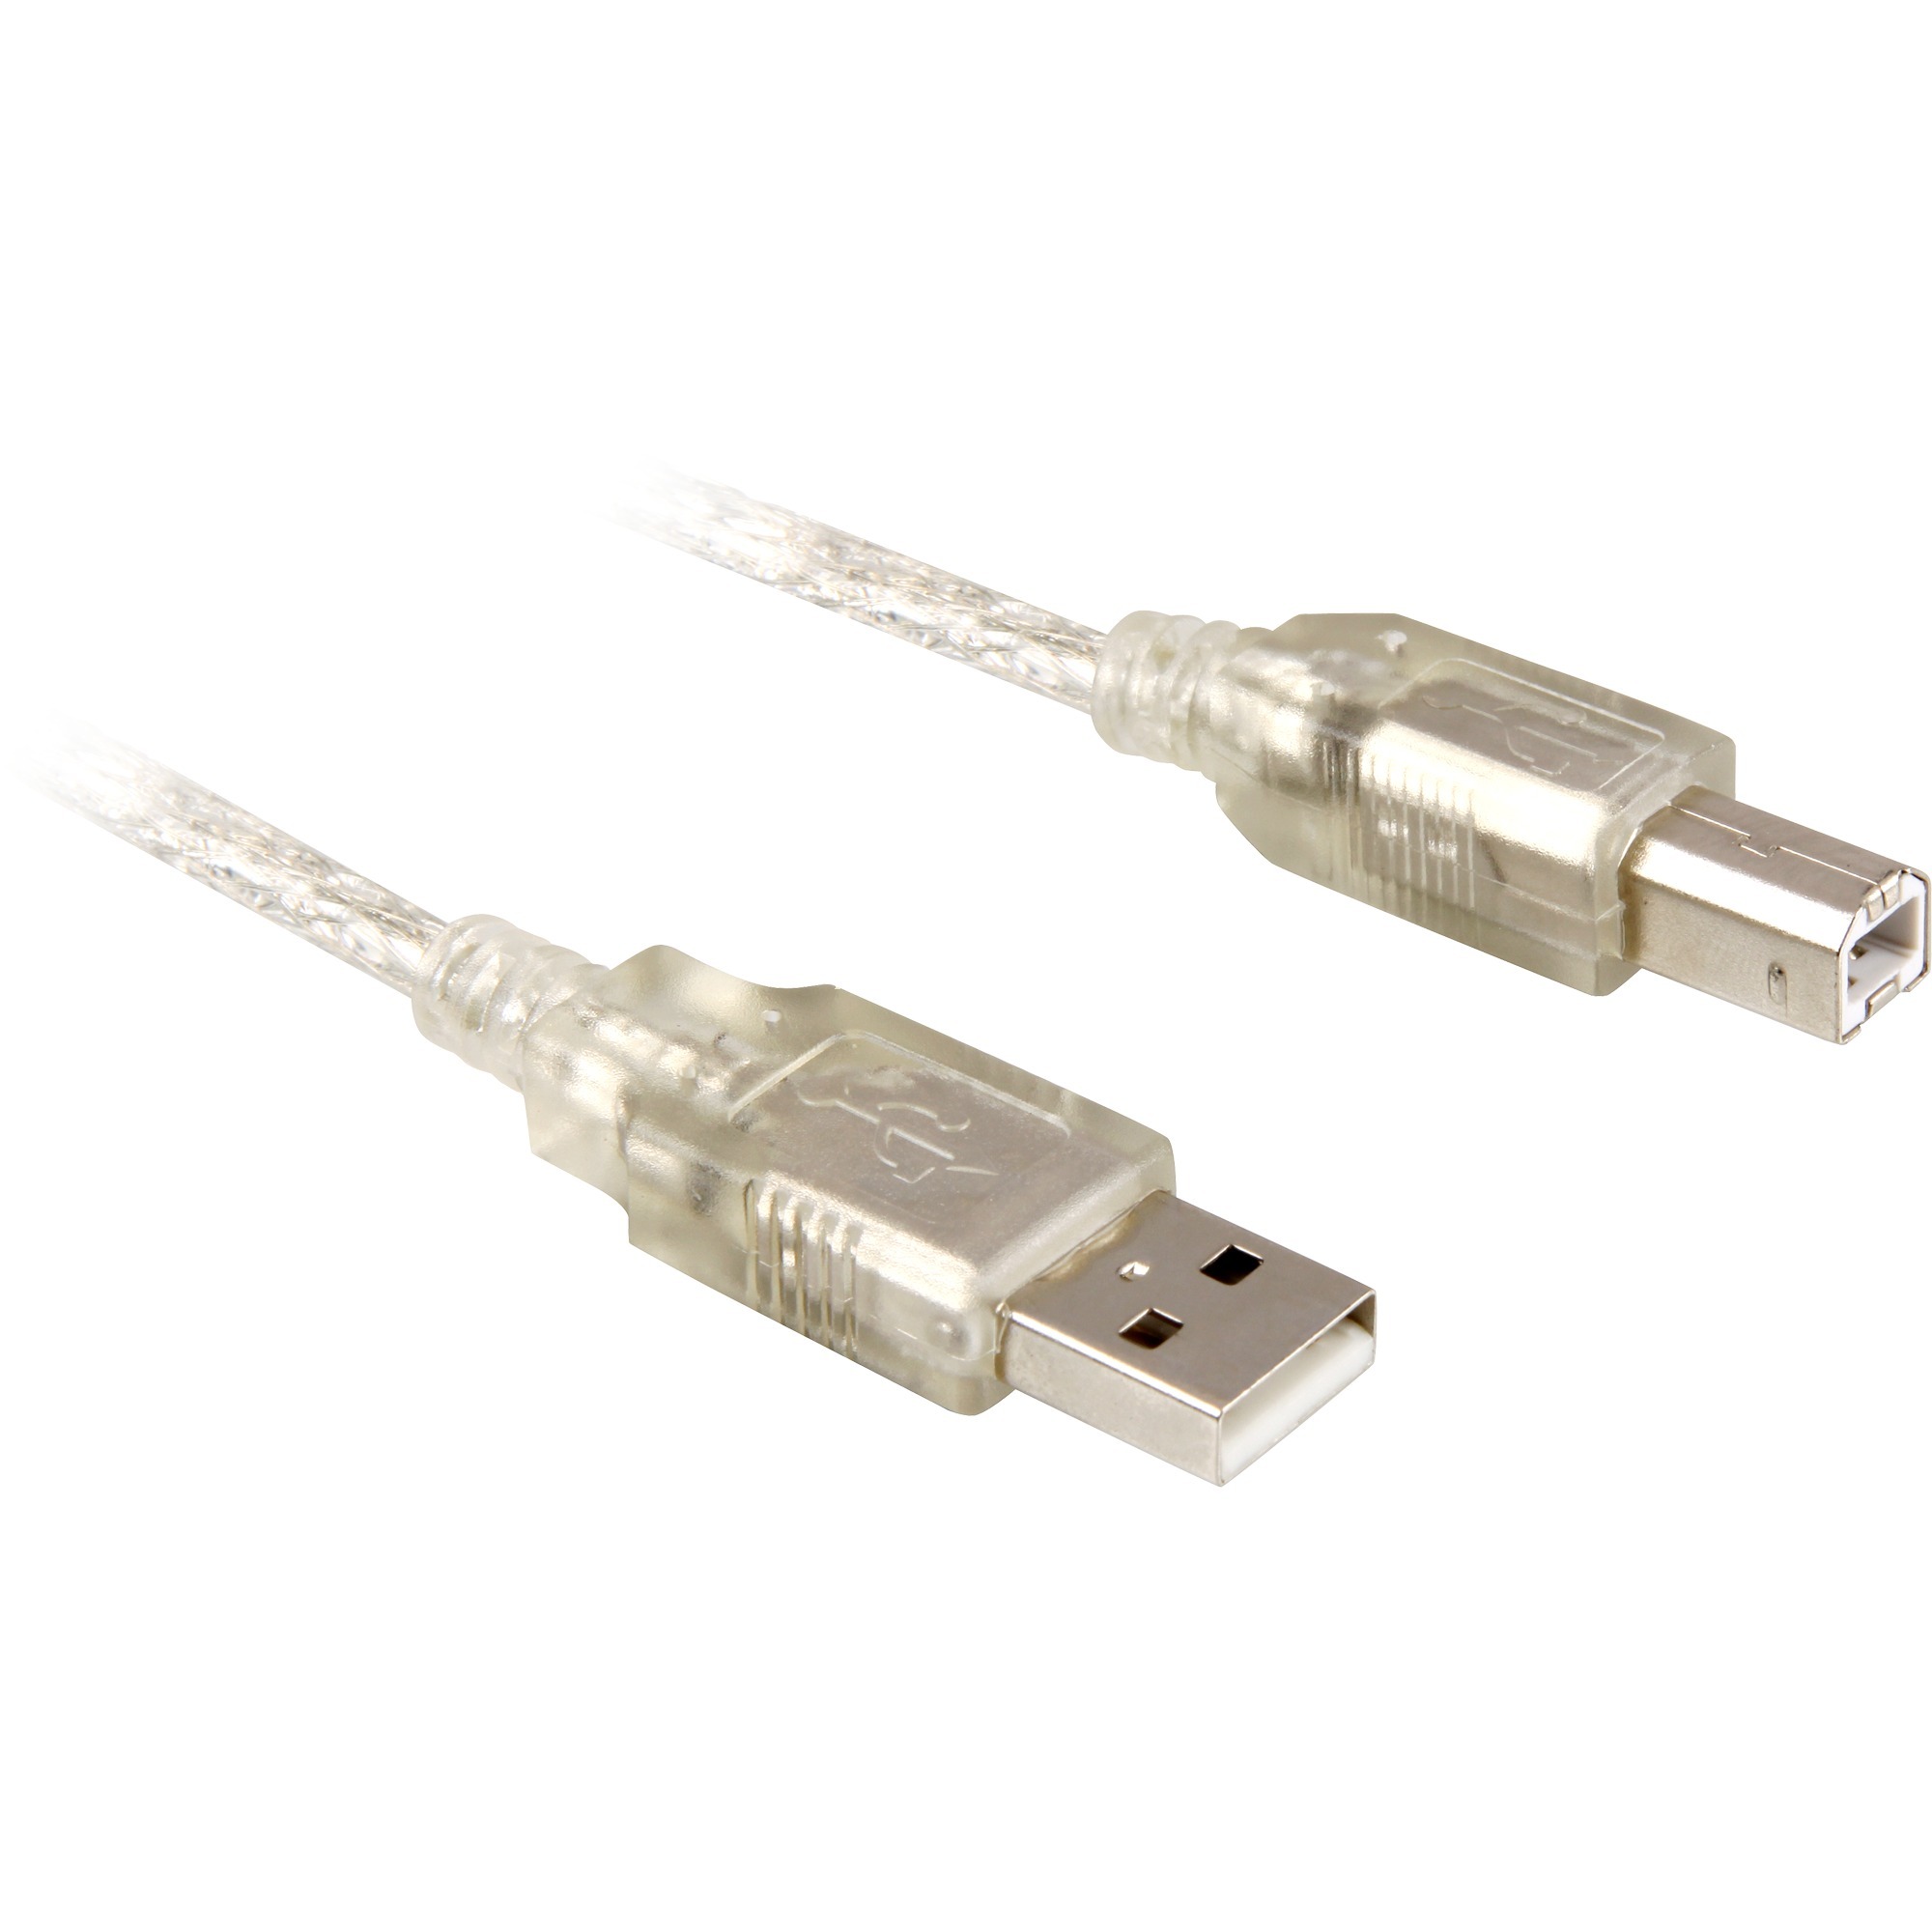 Cable USB 2.0 A-B - 0.5m 0.5m USB A USB B Męska Męska Szary kabel USB